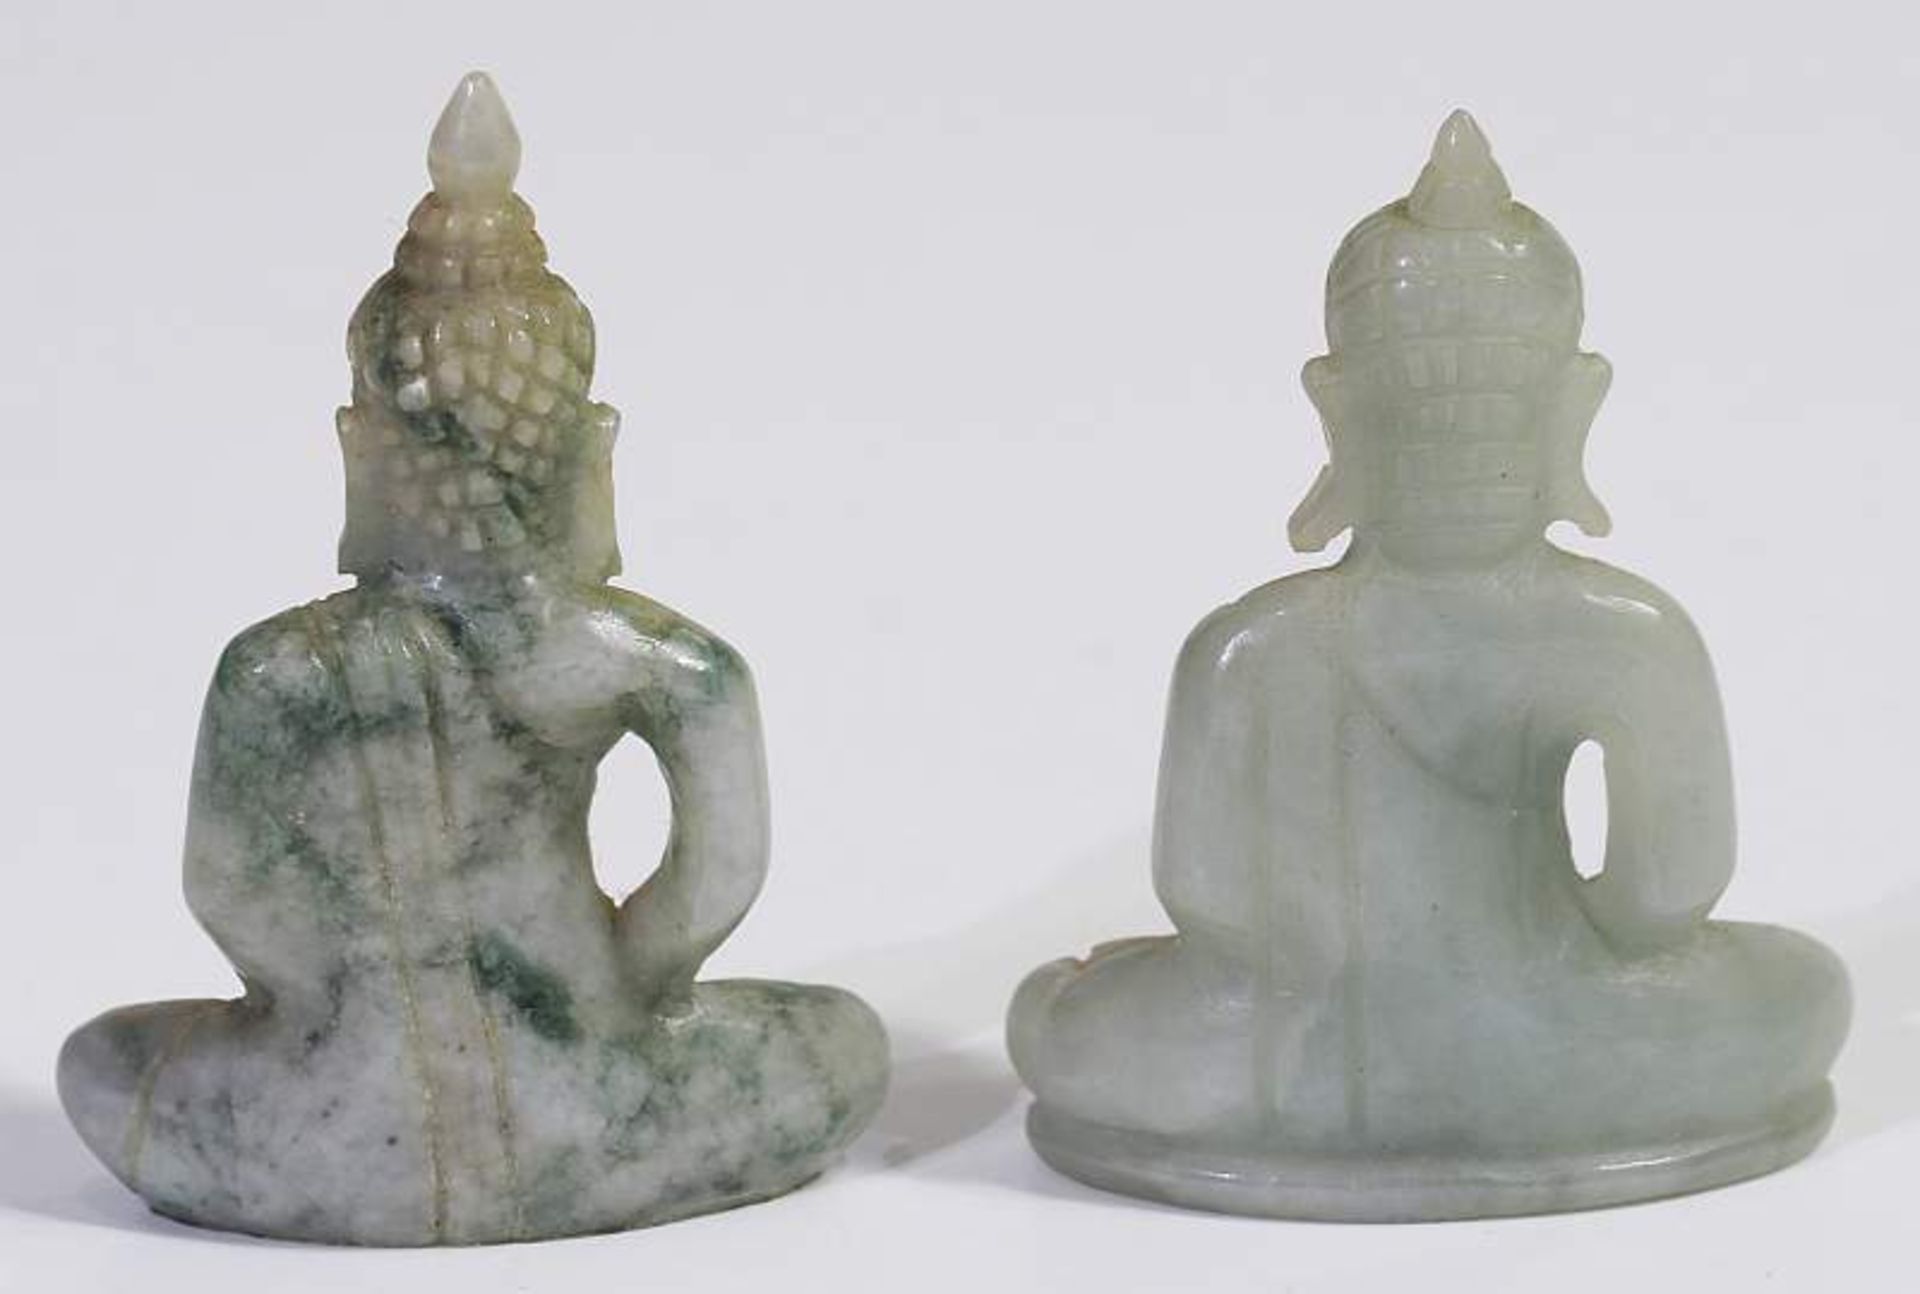 Kleine Buddha-Sammlung.Kleine Buddha-Sammlung. Jade ? oder seladon farbenes Serpentin ?. Insgesamt - Bild 5 aus 6